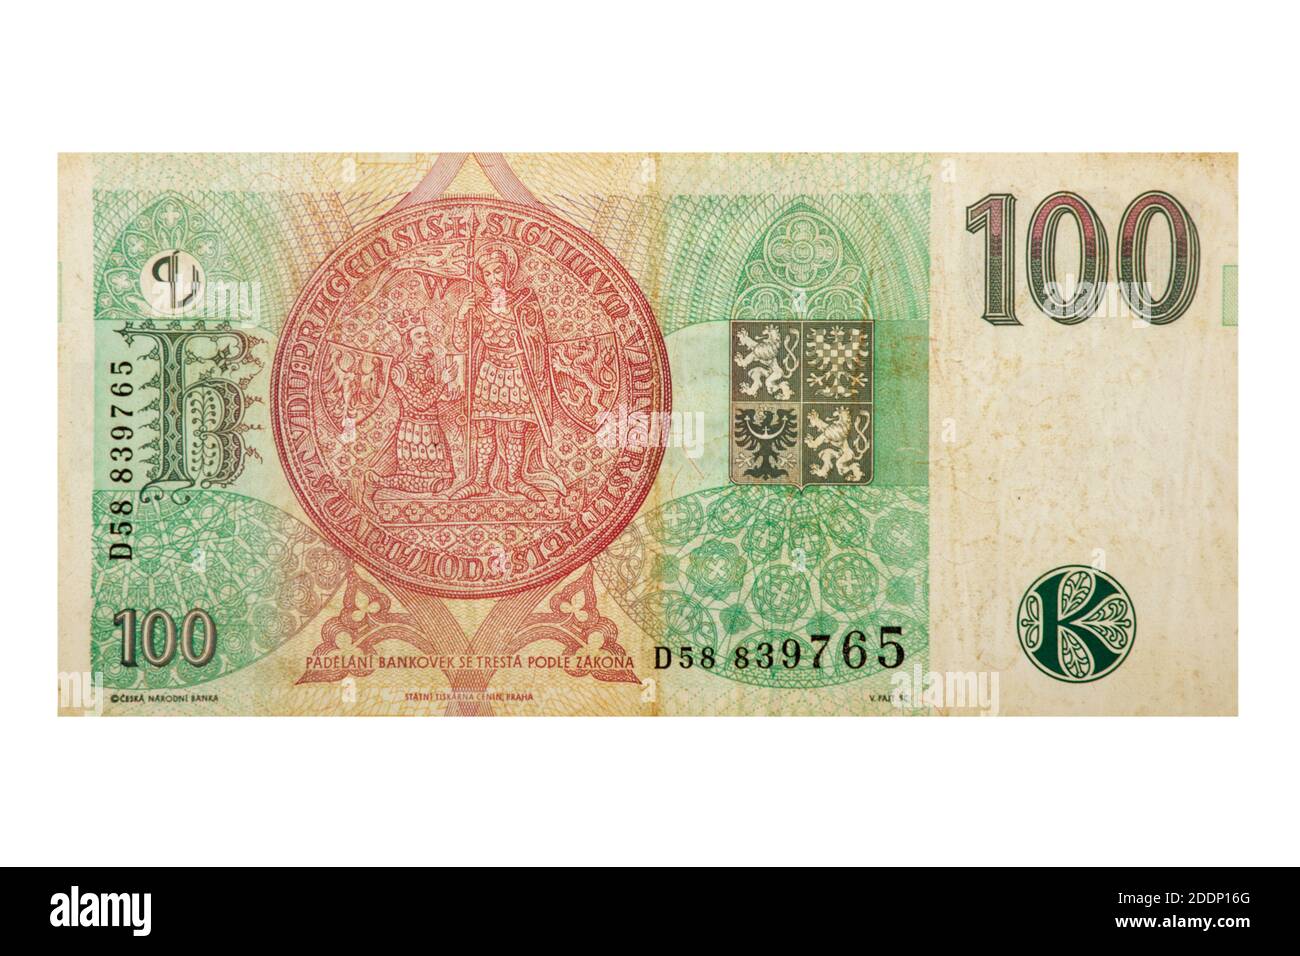 Vue inversée d'une République tchèque billet de banque Koruna 100. La monnaie officielle de la République tchèque depuis 1993 Banque D'Images